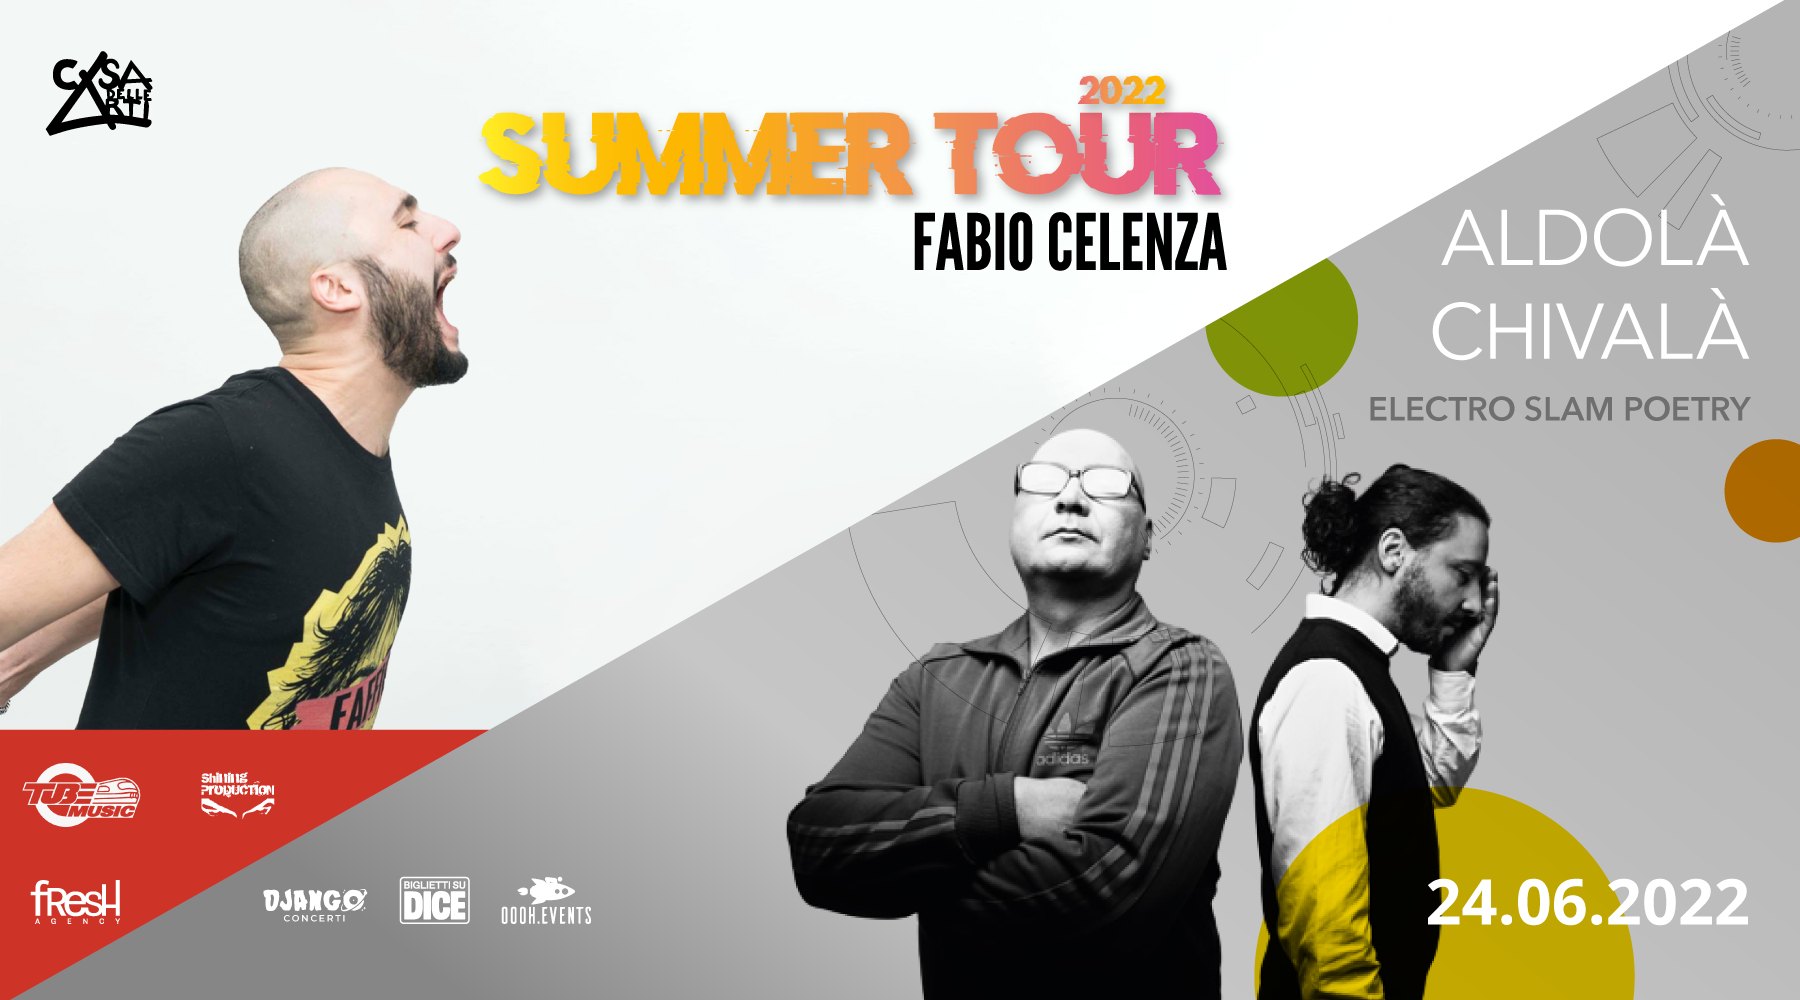 Fabio Celenza Summer Tour + Aldolà Chivalà in concerto // 24.06